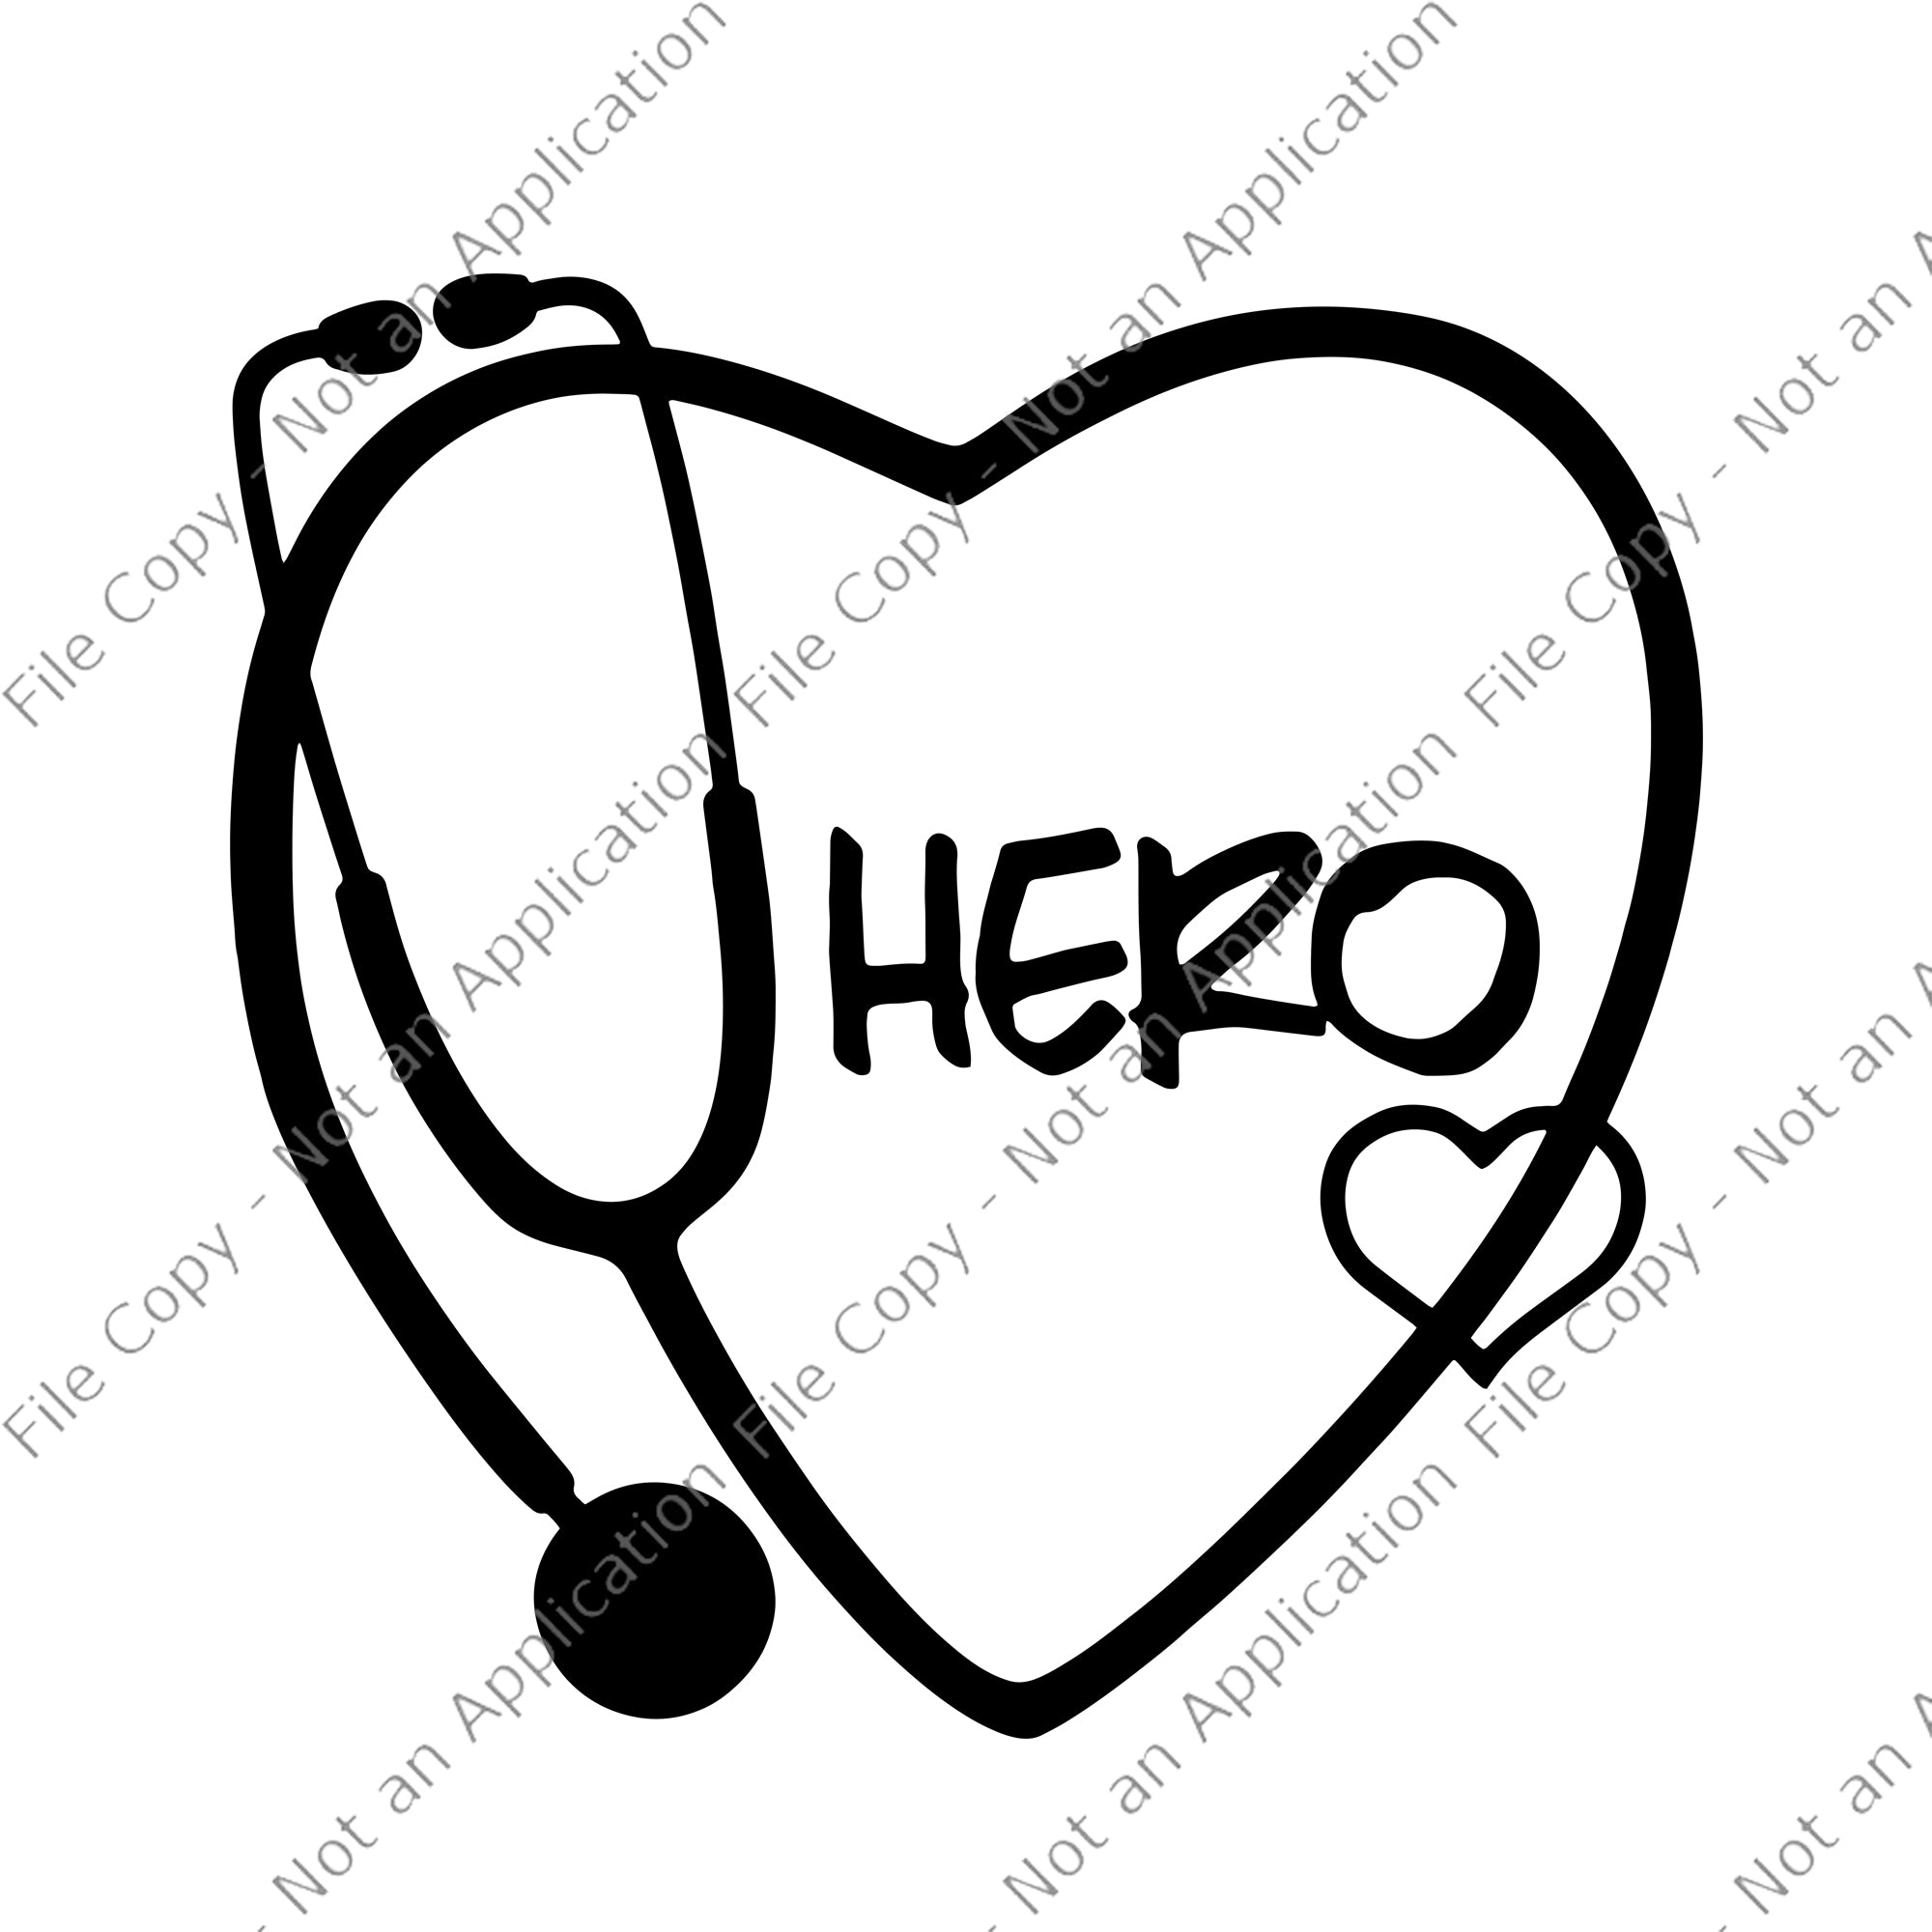 Nurse Hero Svg, Nurse Hero, Nurse Hero PNG, Nurse Hero design, nurse 2020 svg, nurse svg, nurse 2020